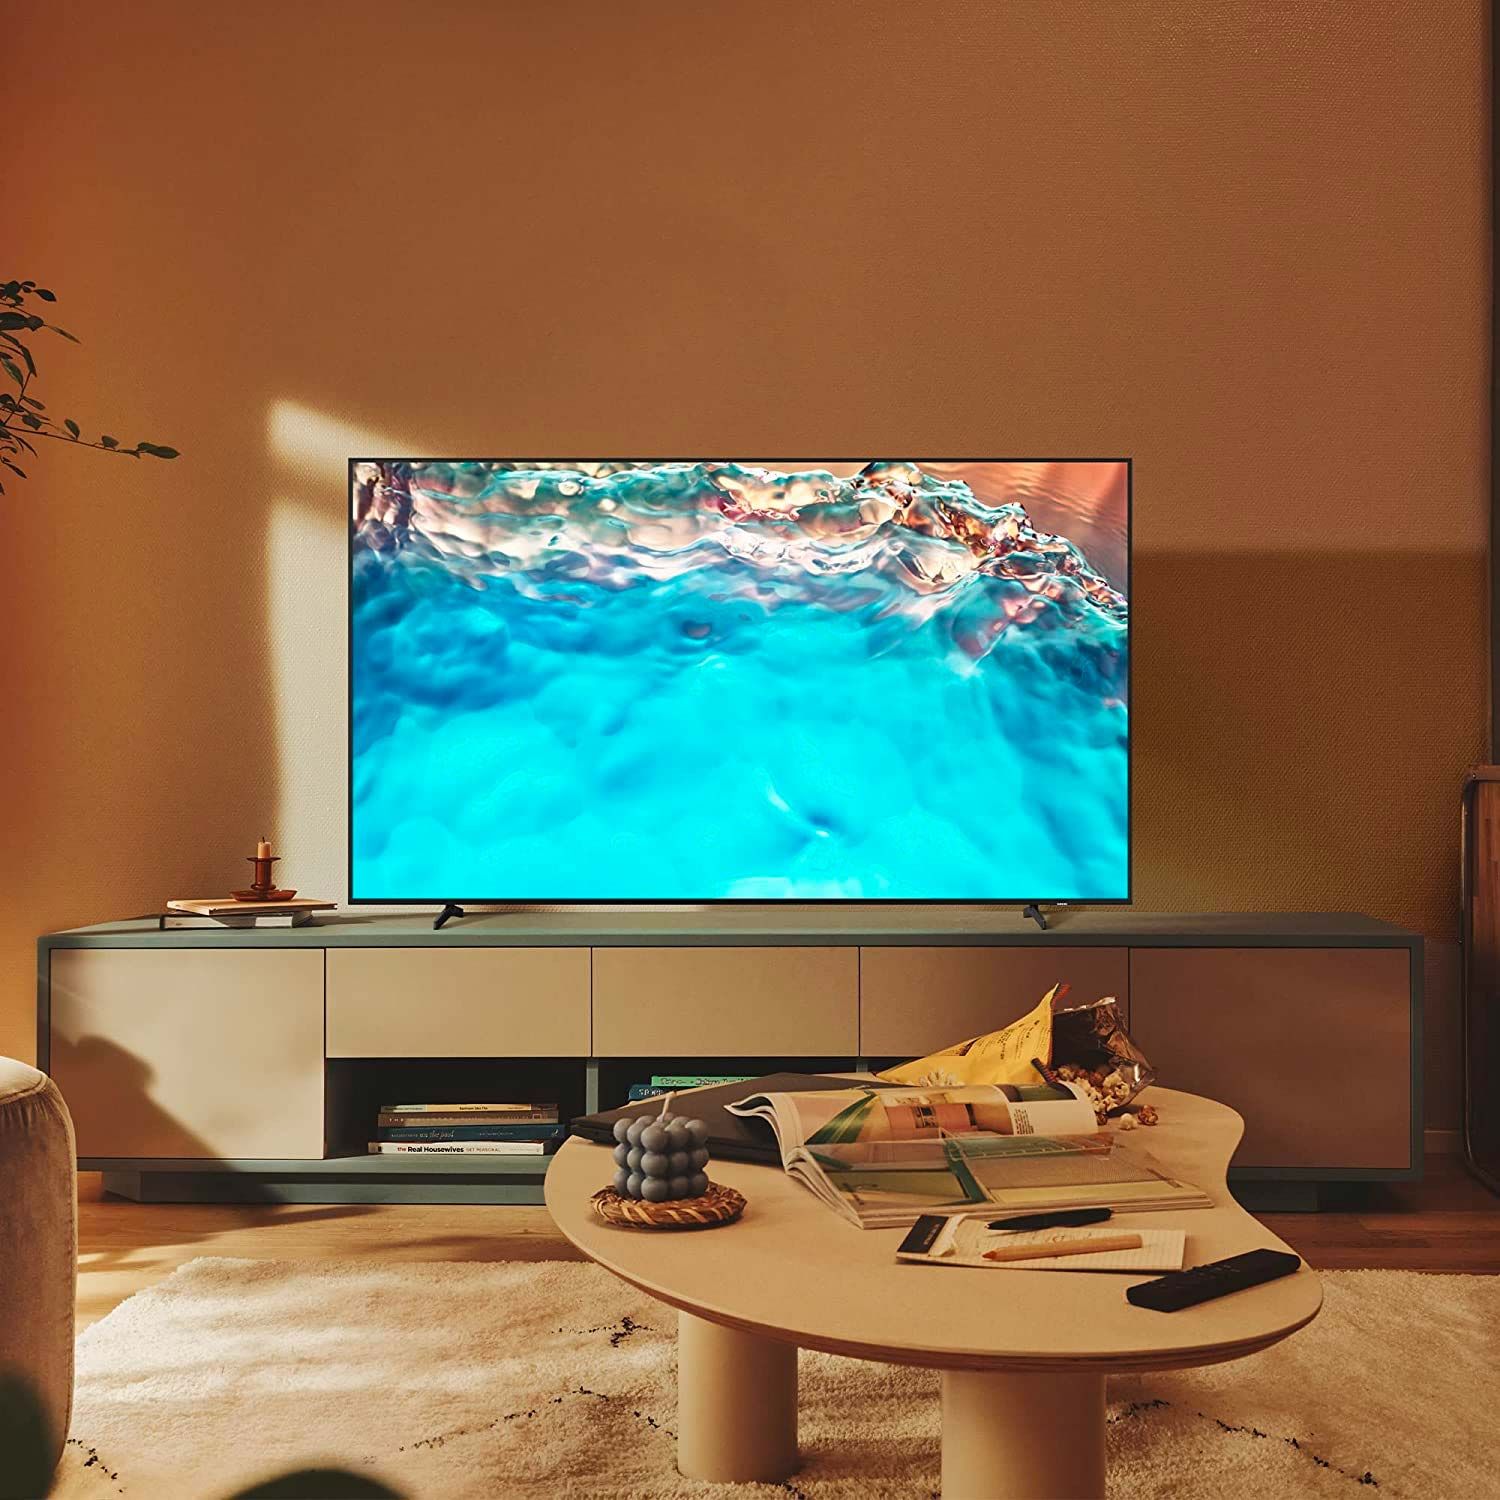 Smart TV de 32 pulgadas: cómo escoger los mejores modelos